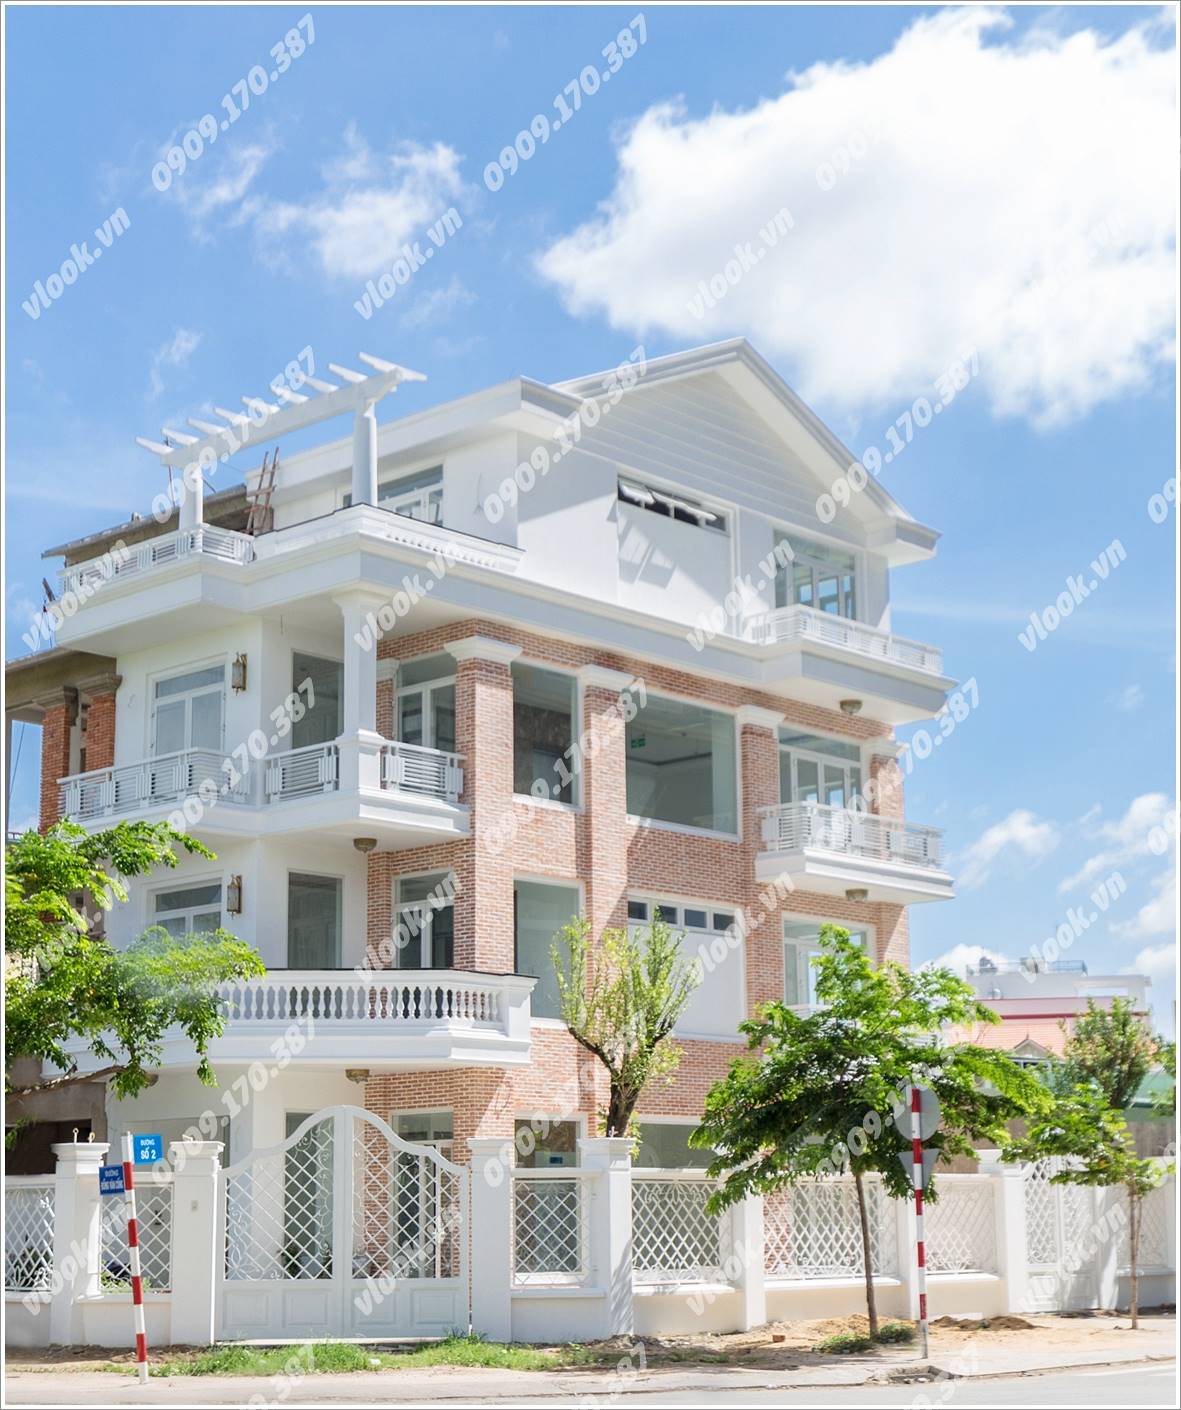 Cao ốc văn phòng cho thuê Đồng Văn Cống Building, Quận 2, TPHCM - vlook.vn